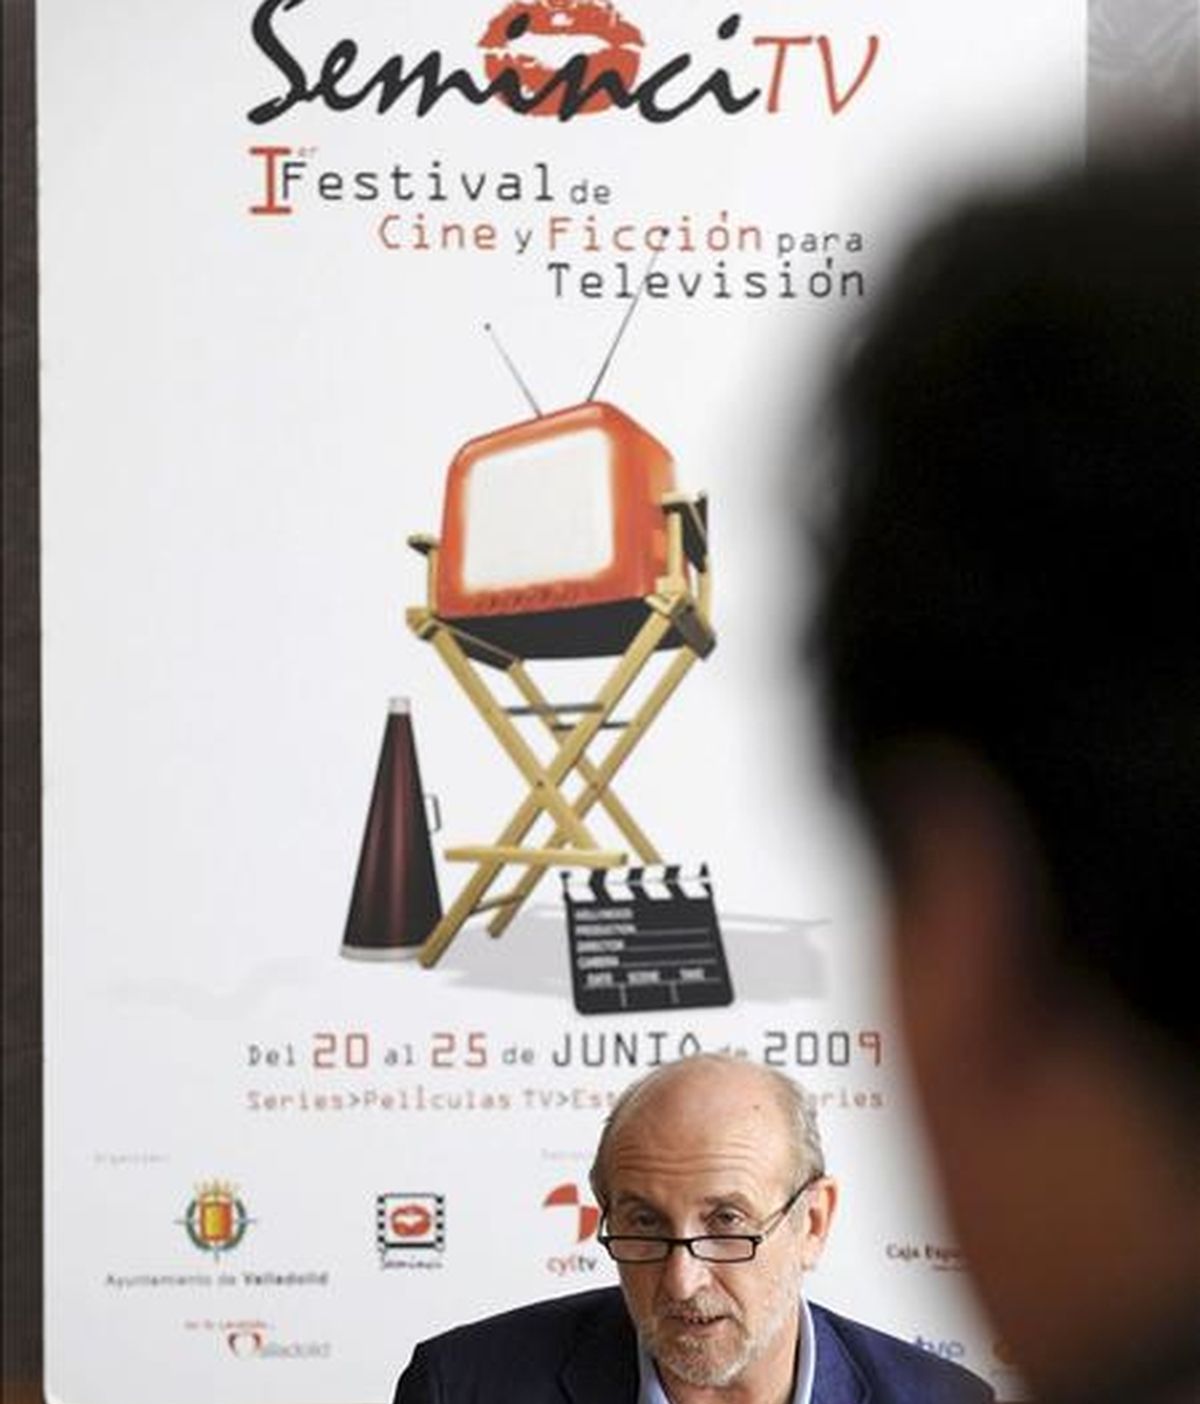 En la imagen, Javier Angulo, el director de la Semana Internacional de Cine (Seminci), de SeminciTV, el primer Festival de Cine y Ficción para Televisión. EFE